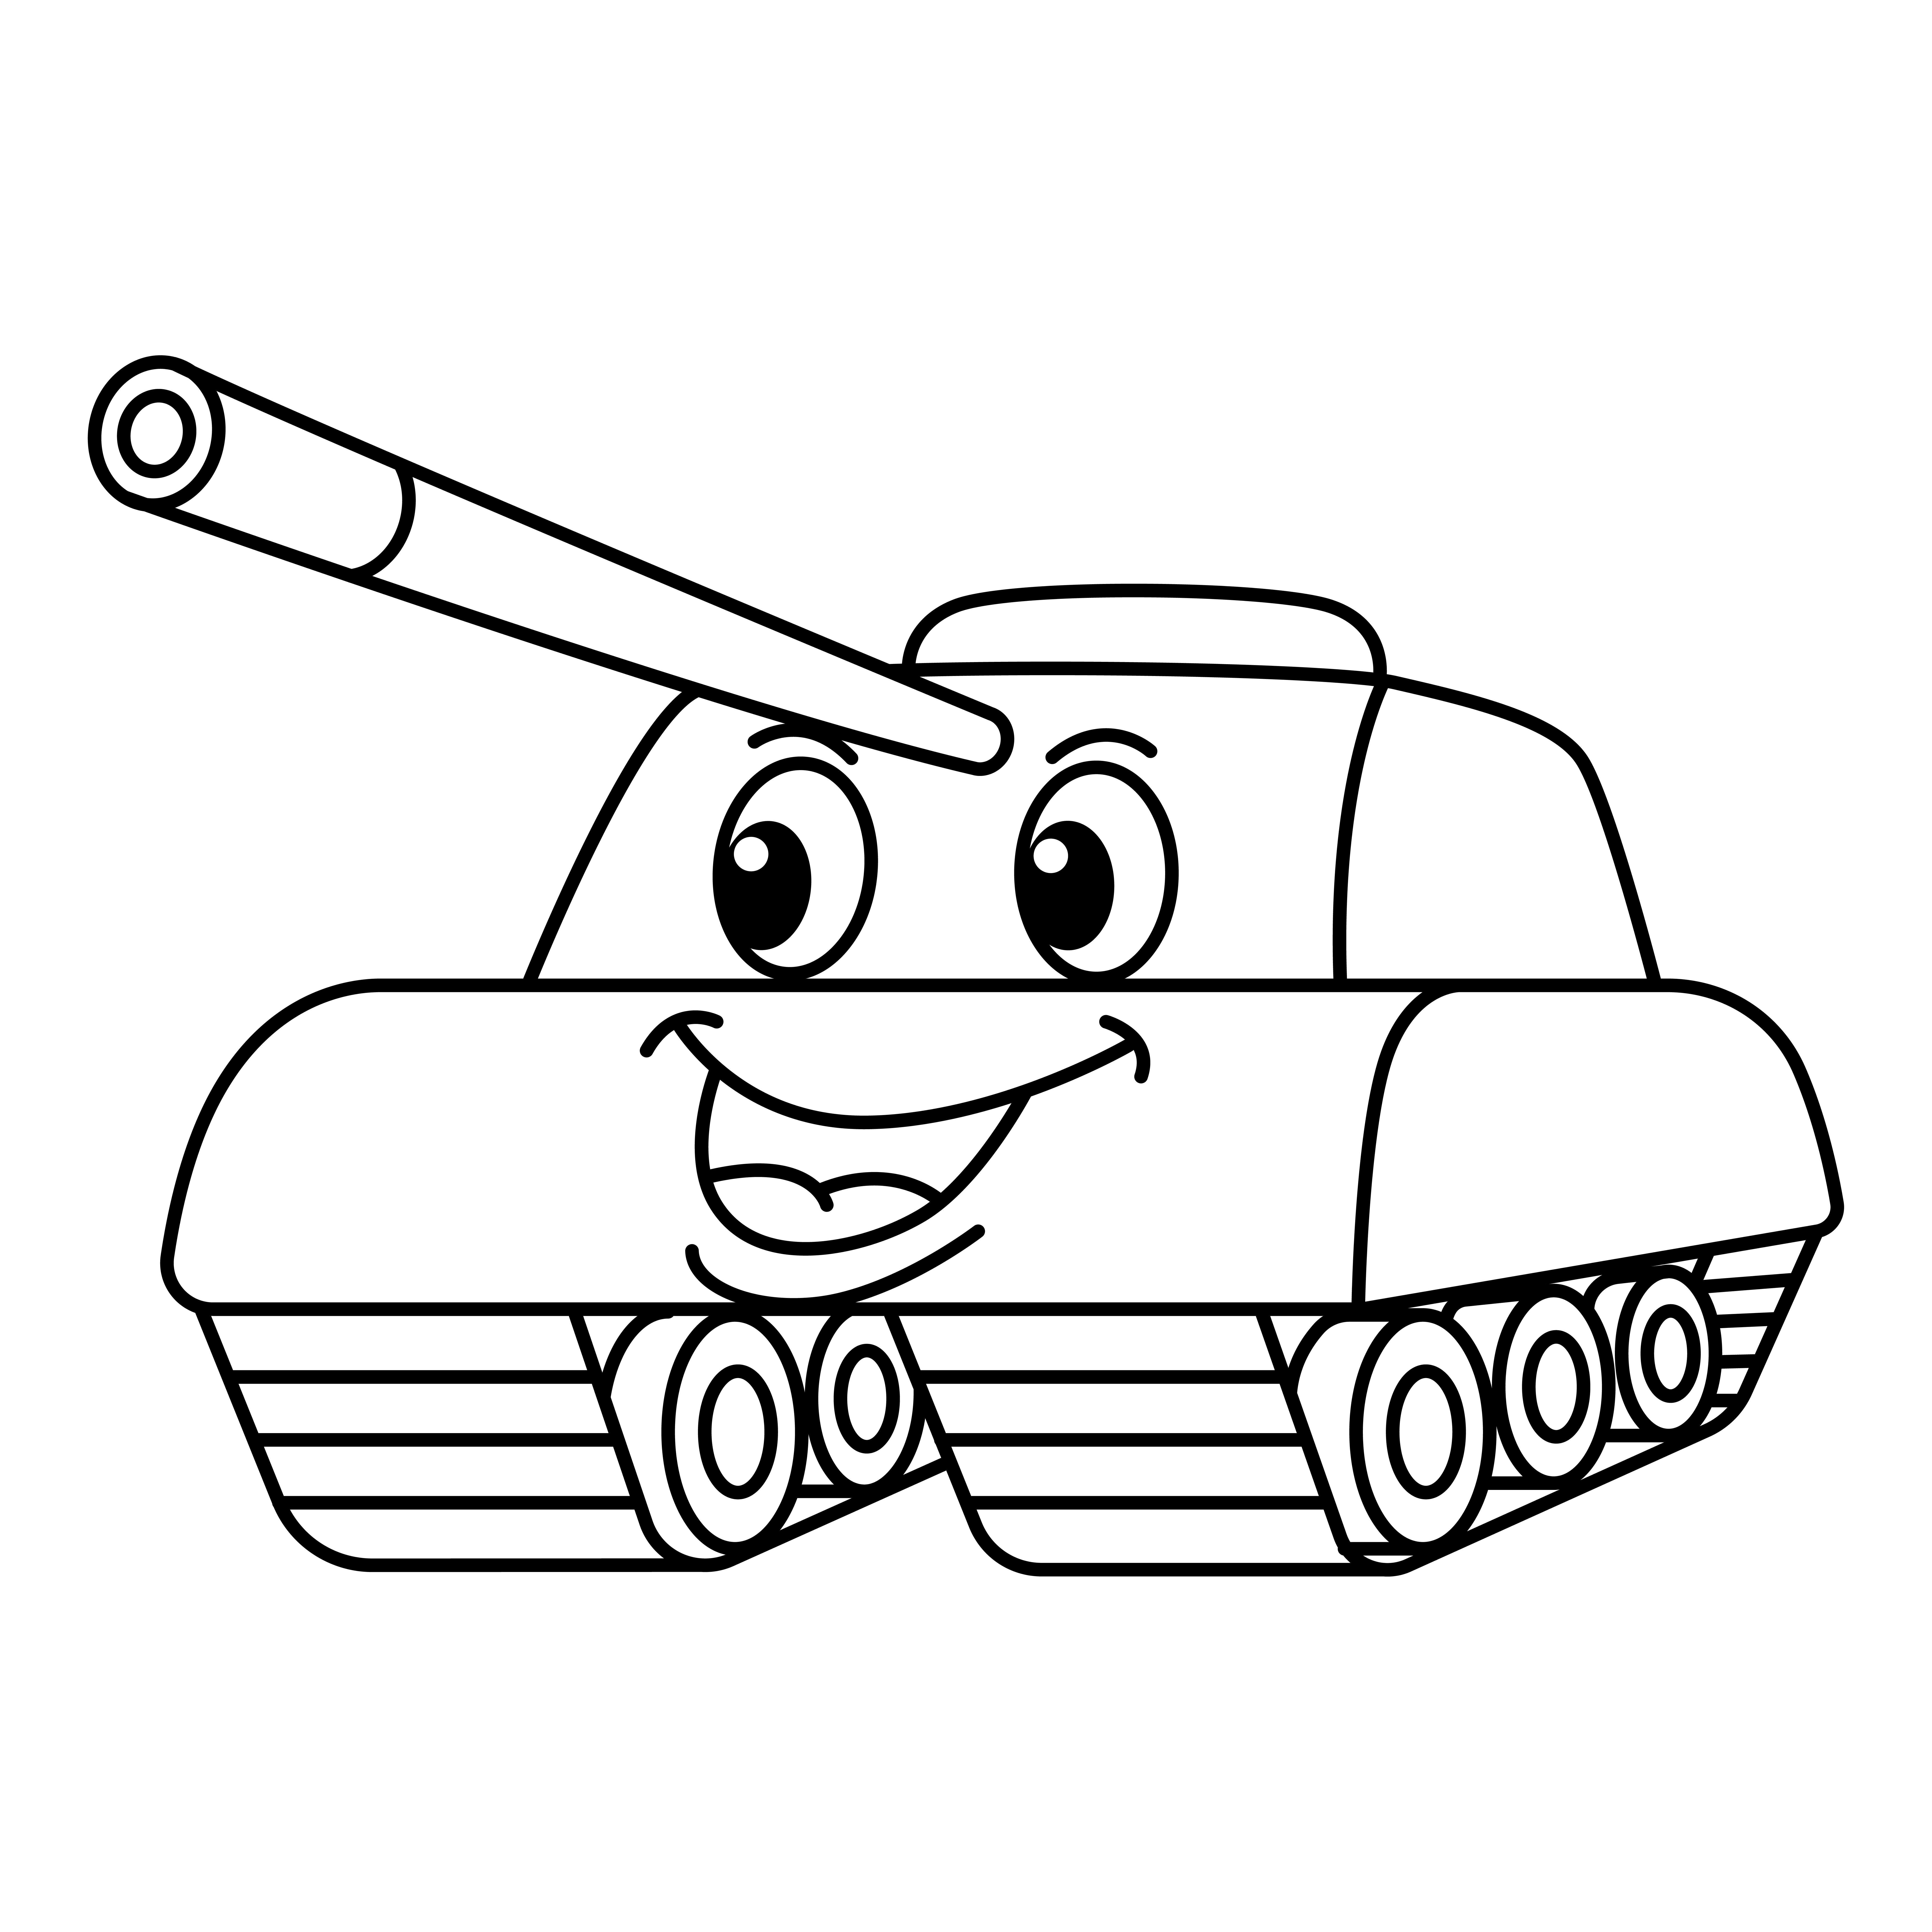 Раскраска мультяшный танк с лицом формата А4 в высоком качестве